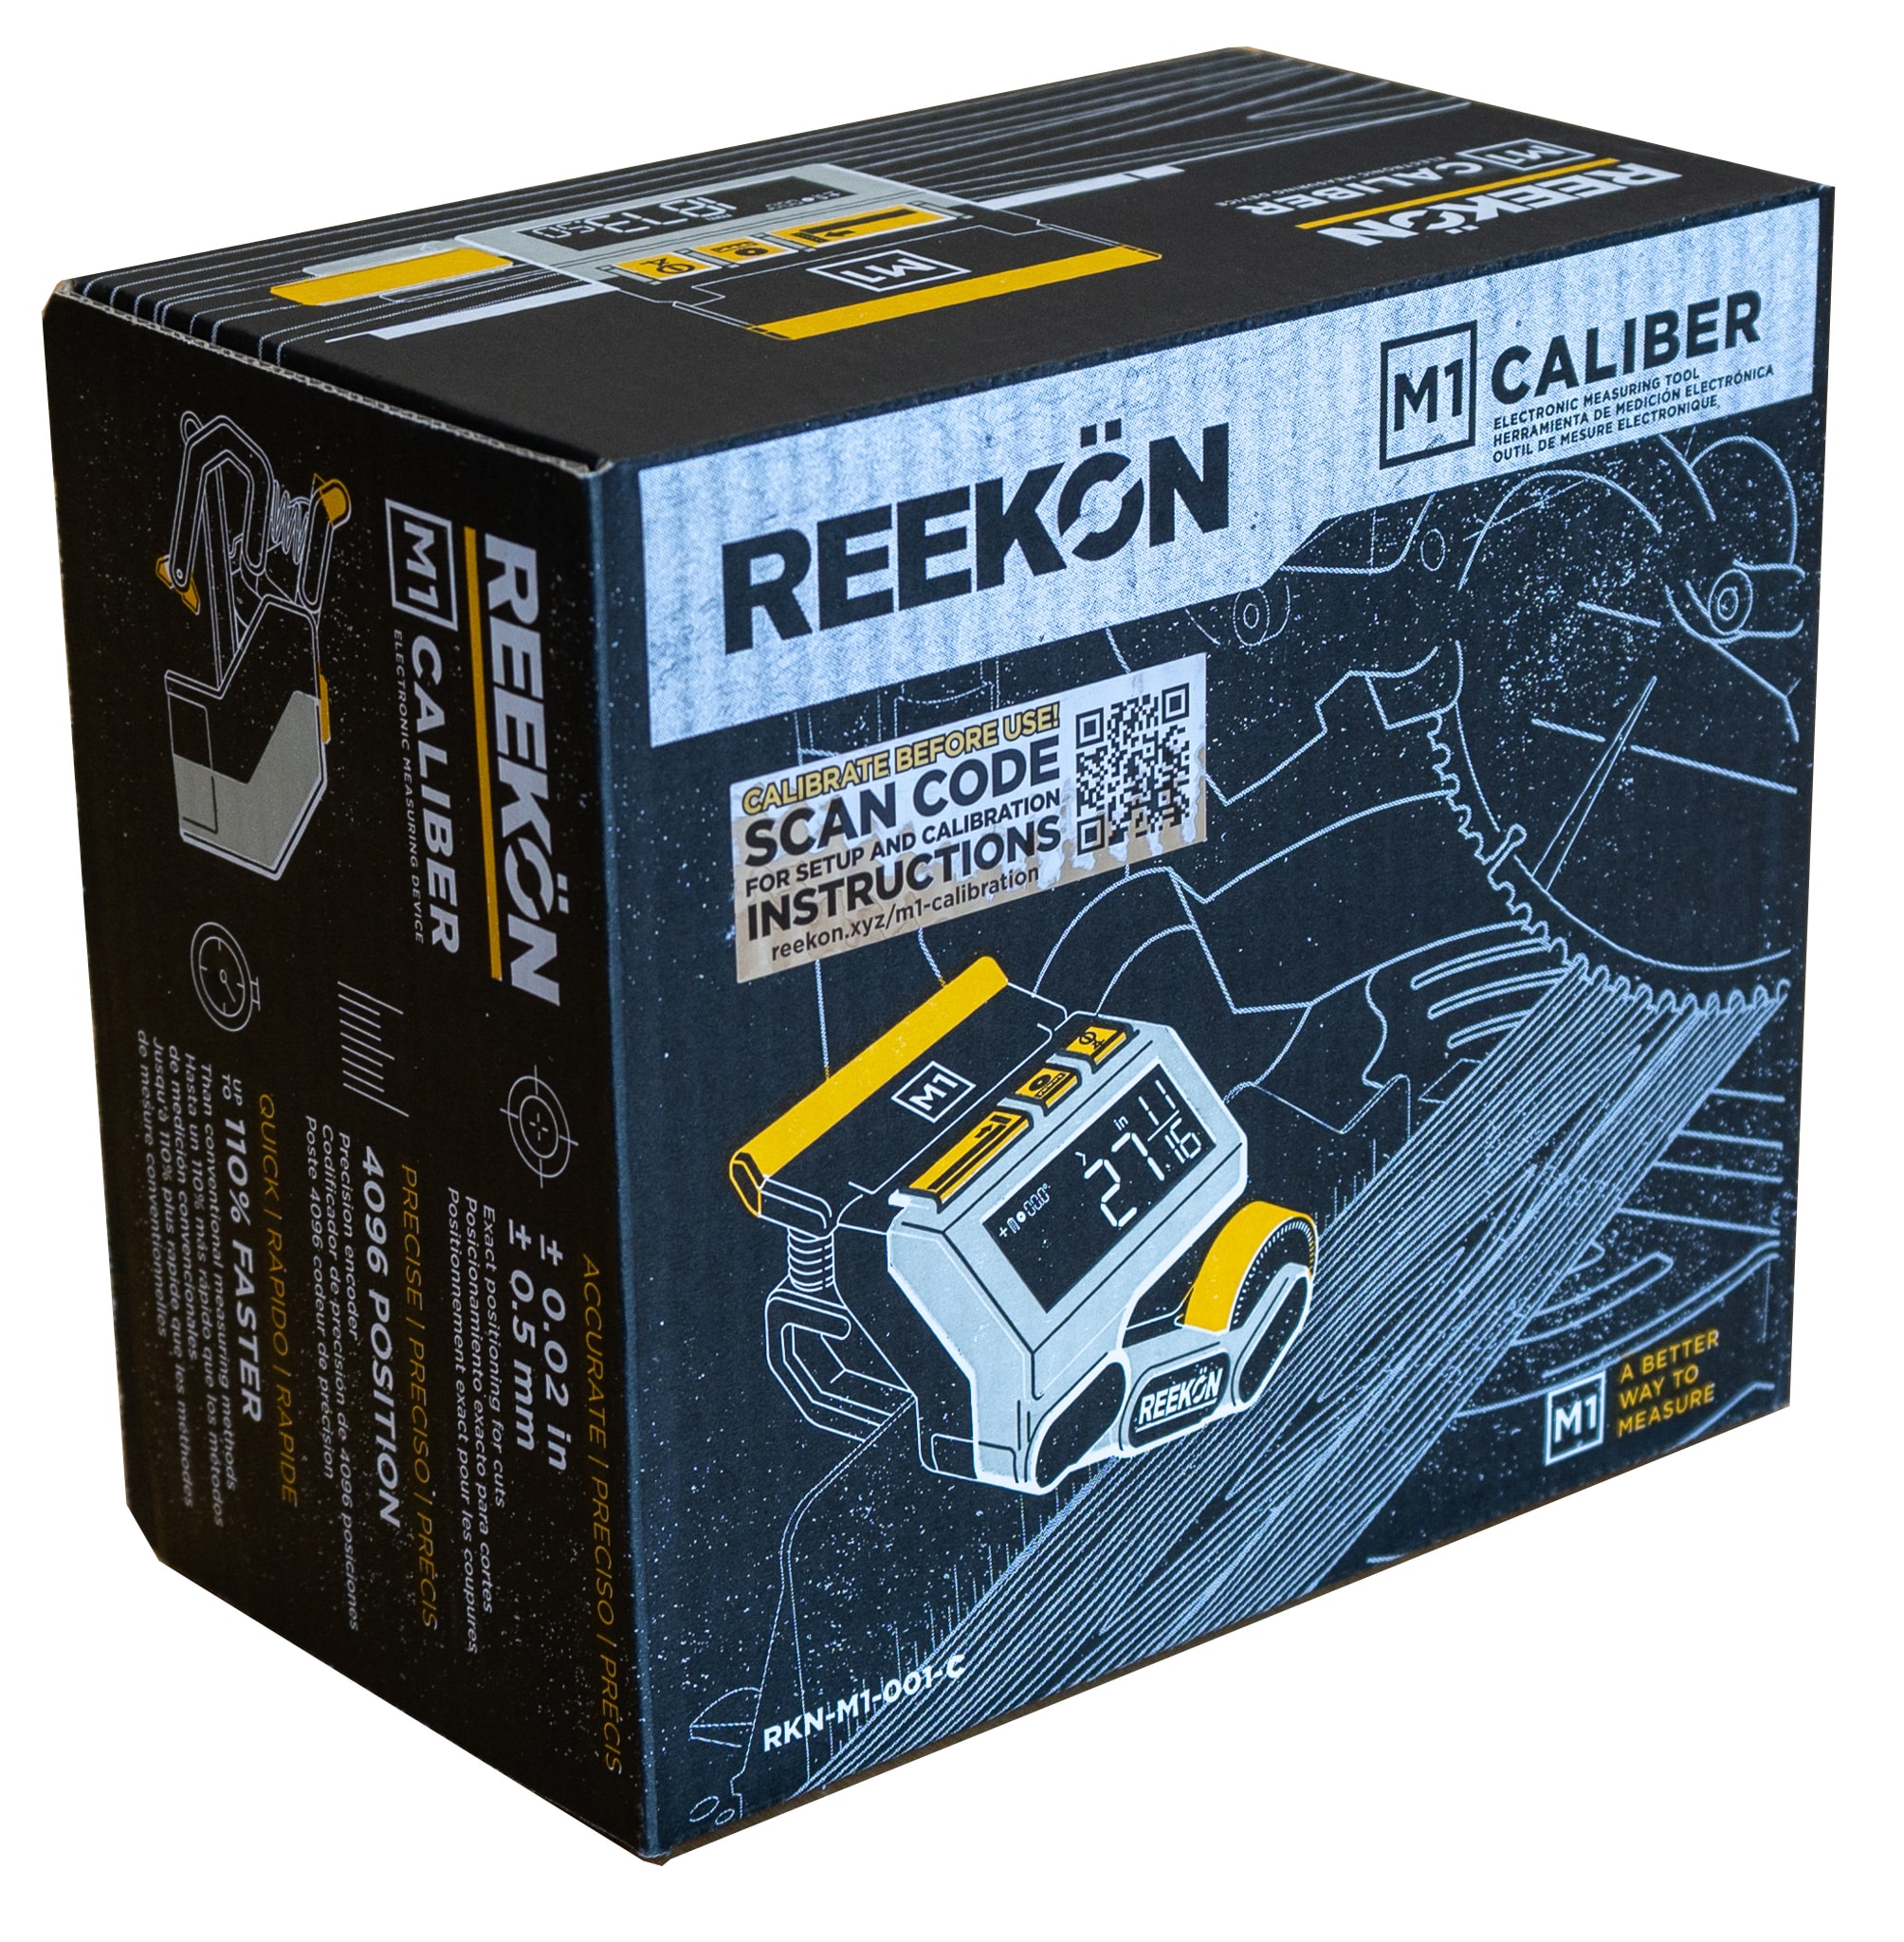 REEKON Tools - Built on Digital